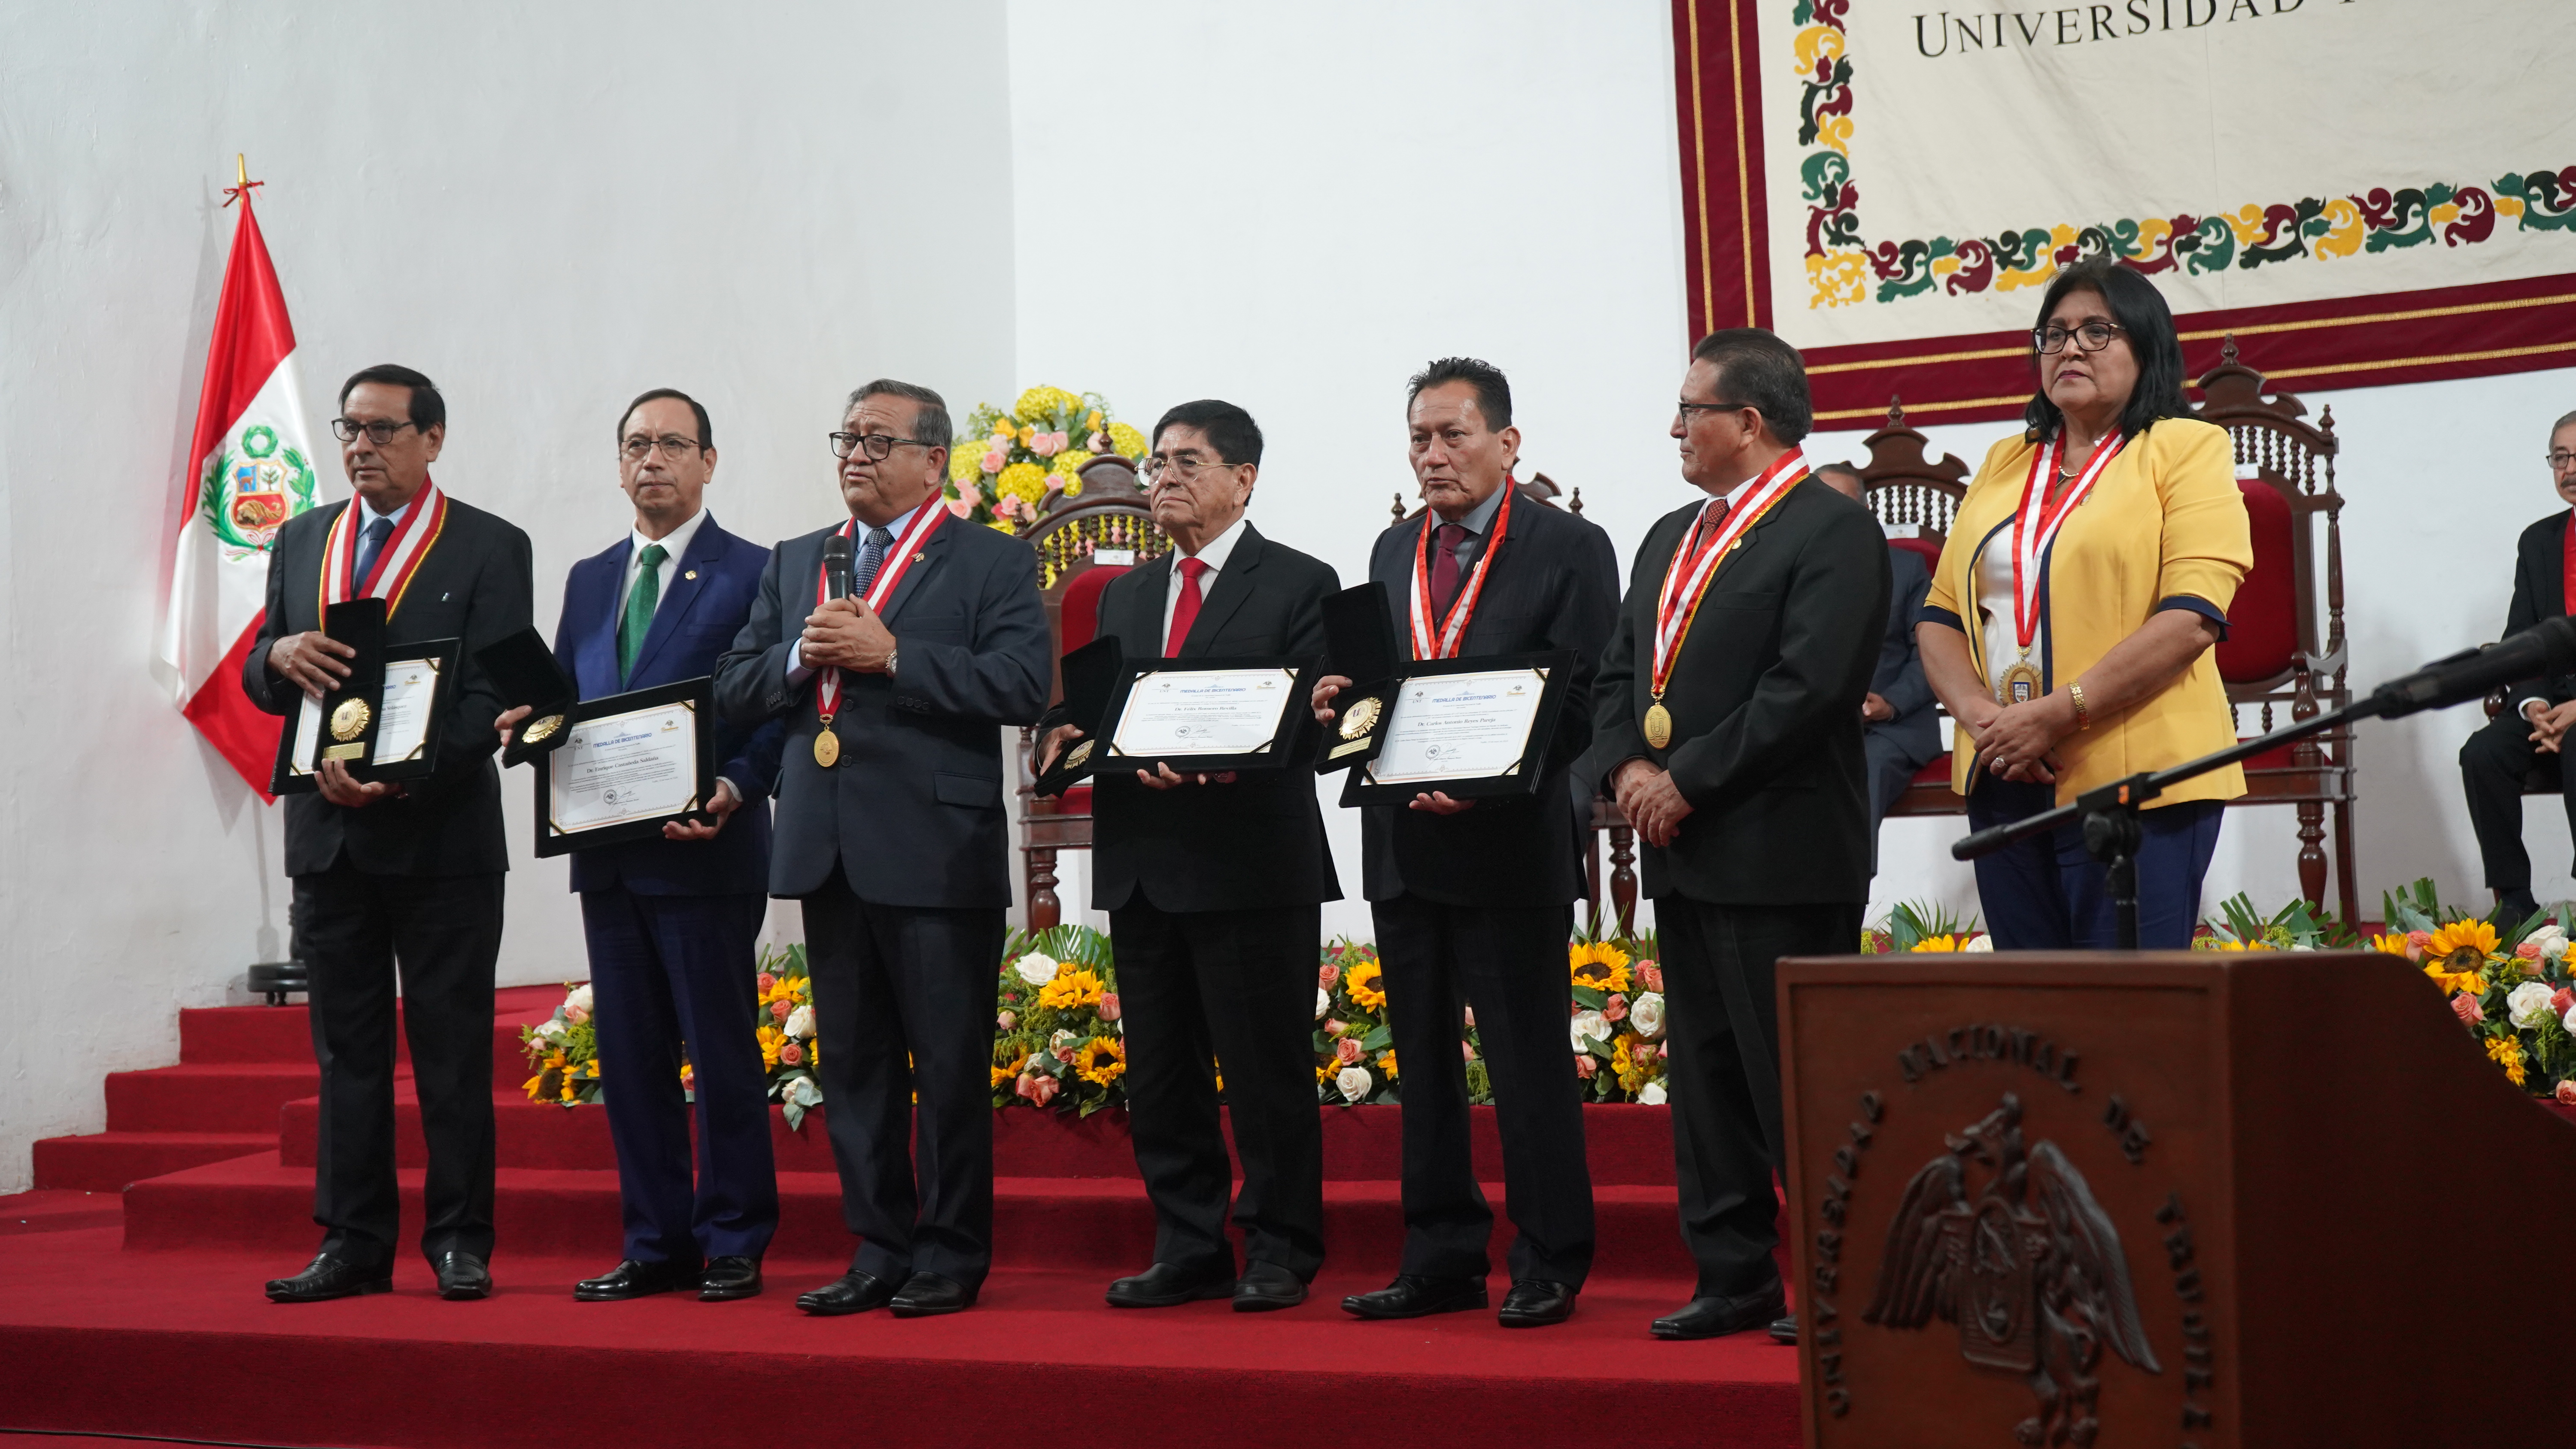 El Dr. Enrique Castañeda recibió la Medalla del Bicentenario como egresado destacado de la Universidad Nacional de Trujillo